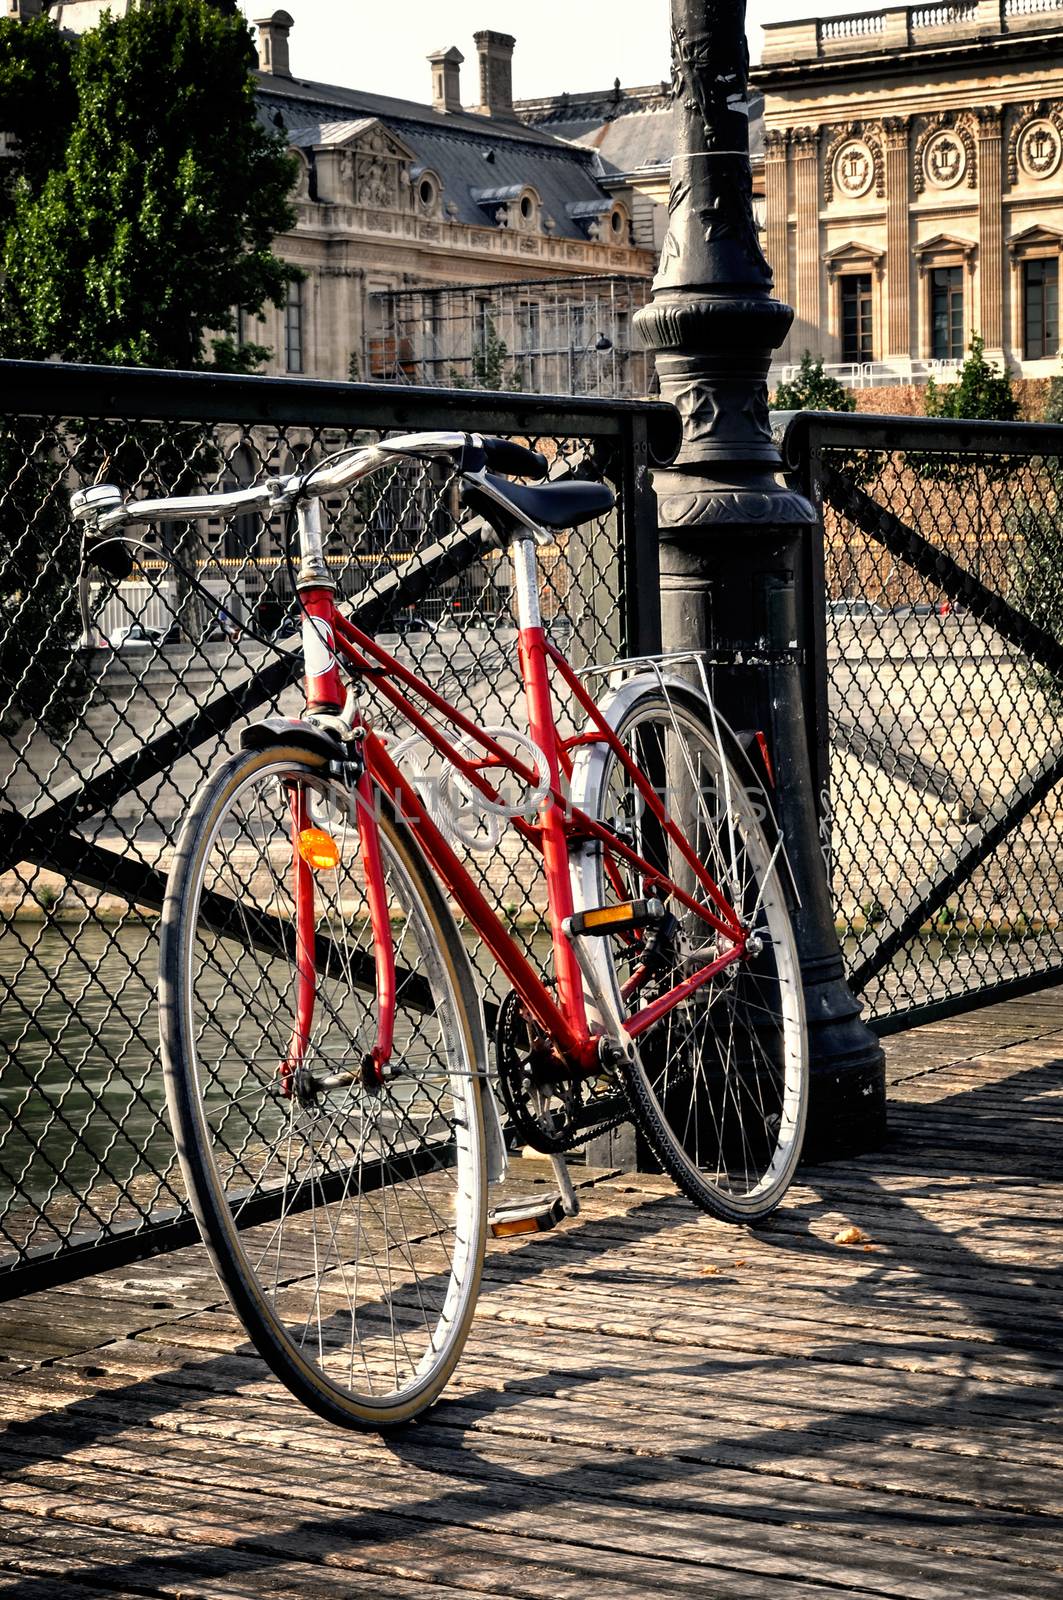 Vintage red bicycle in Paris by dutourdumonde